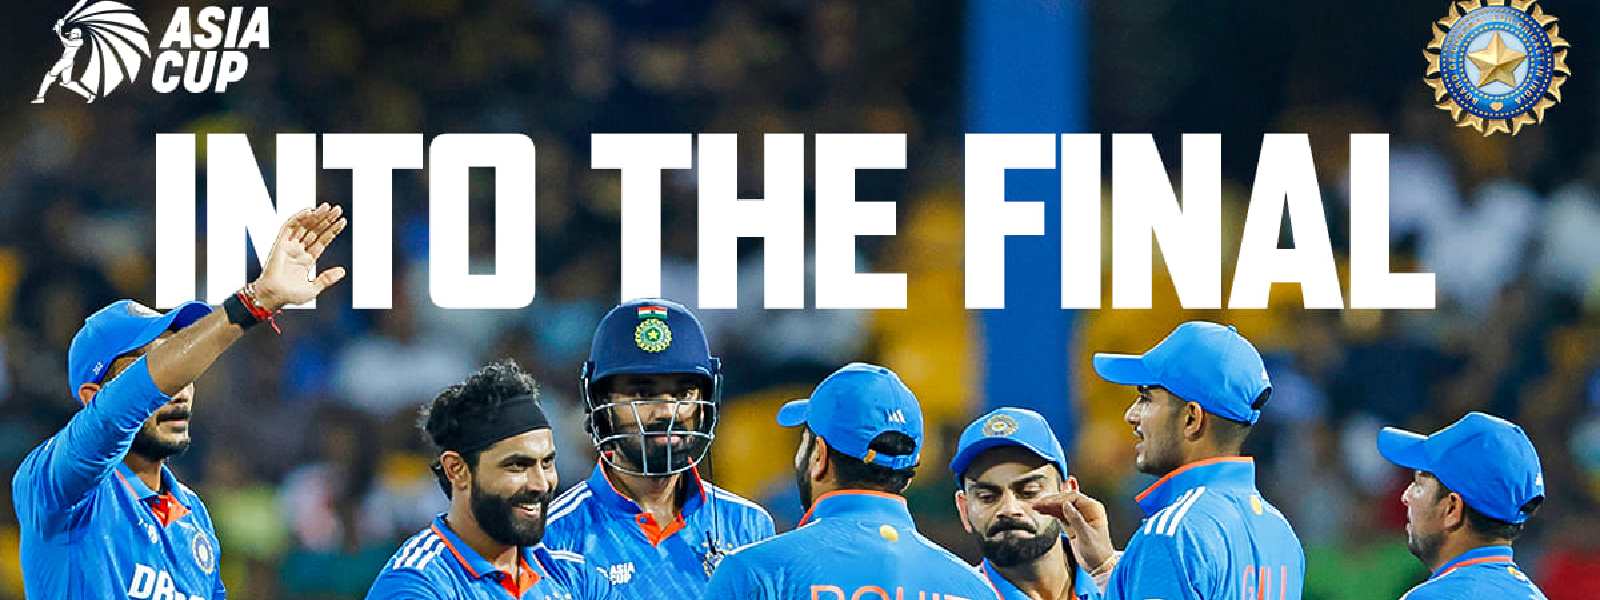 India ends Sri Lanka's 13-game winning streak